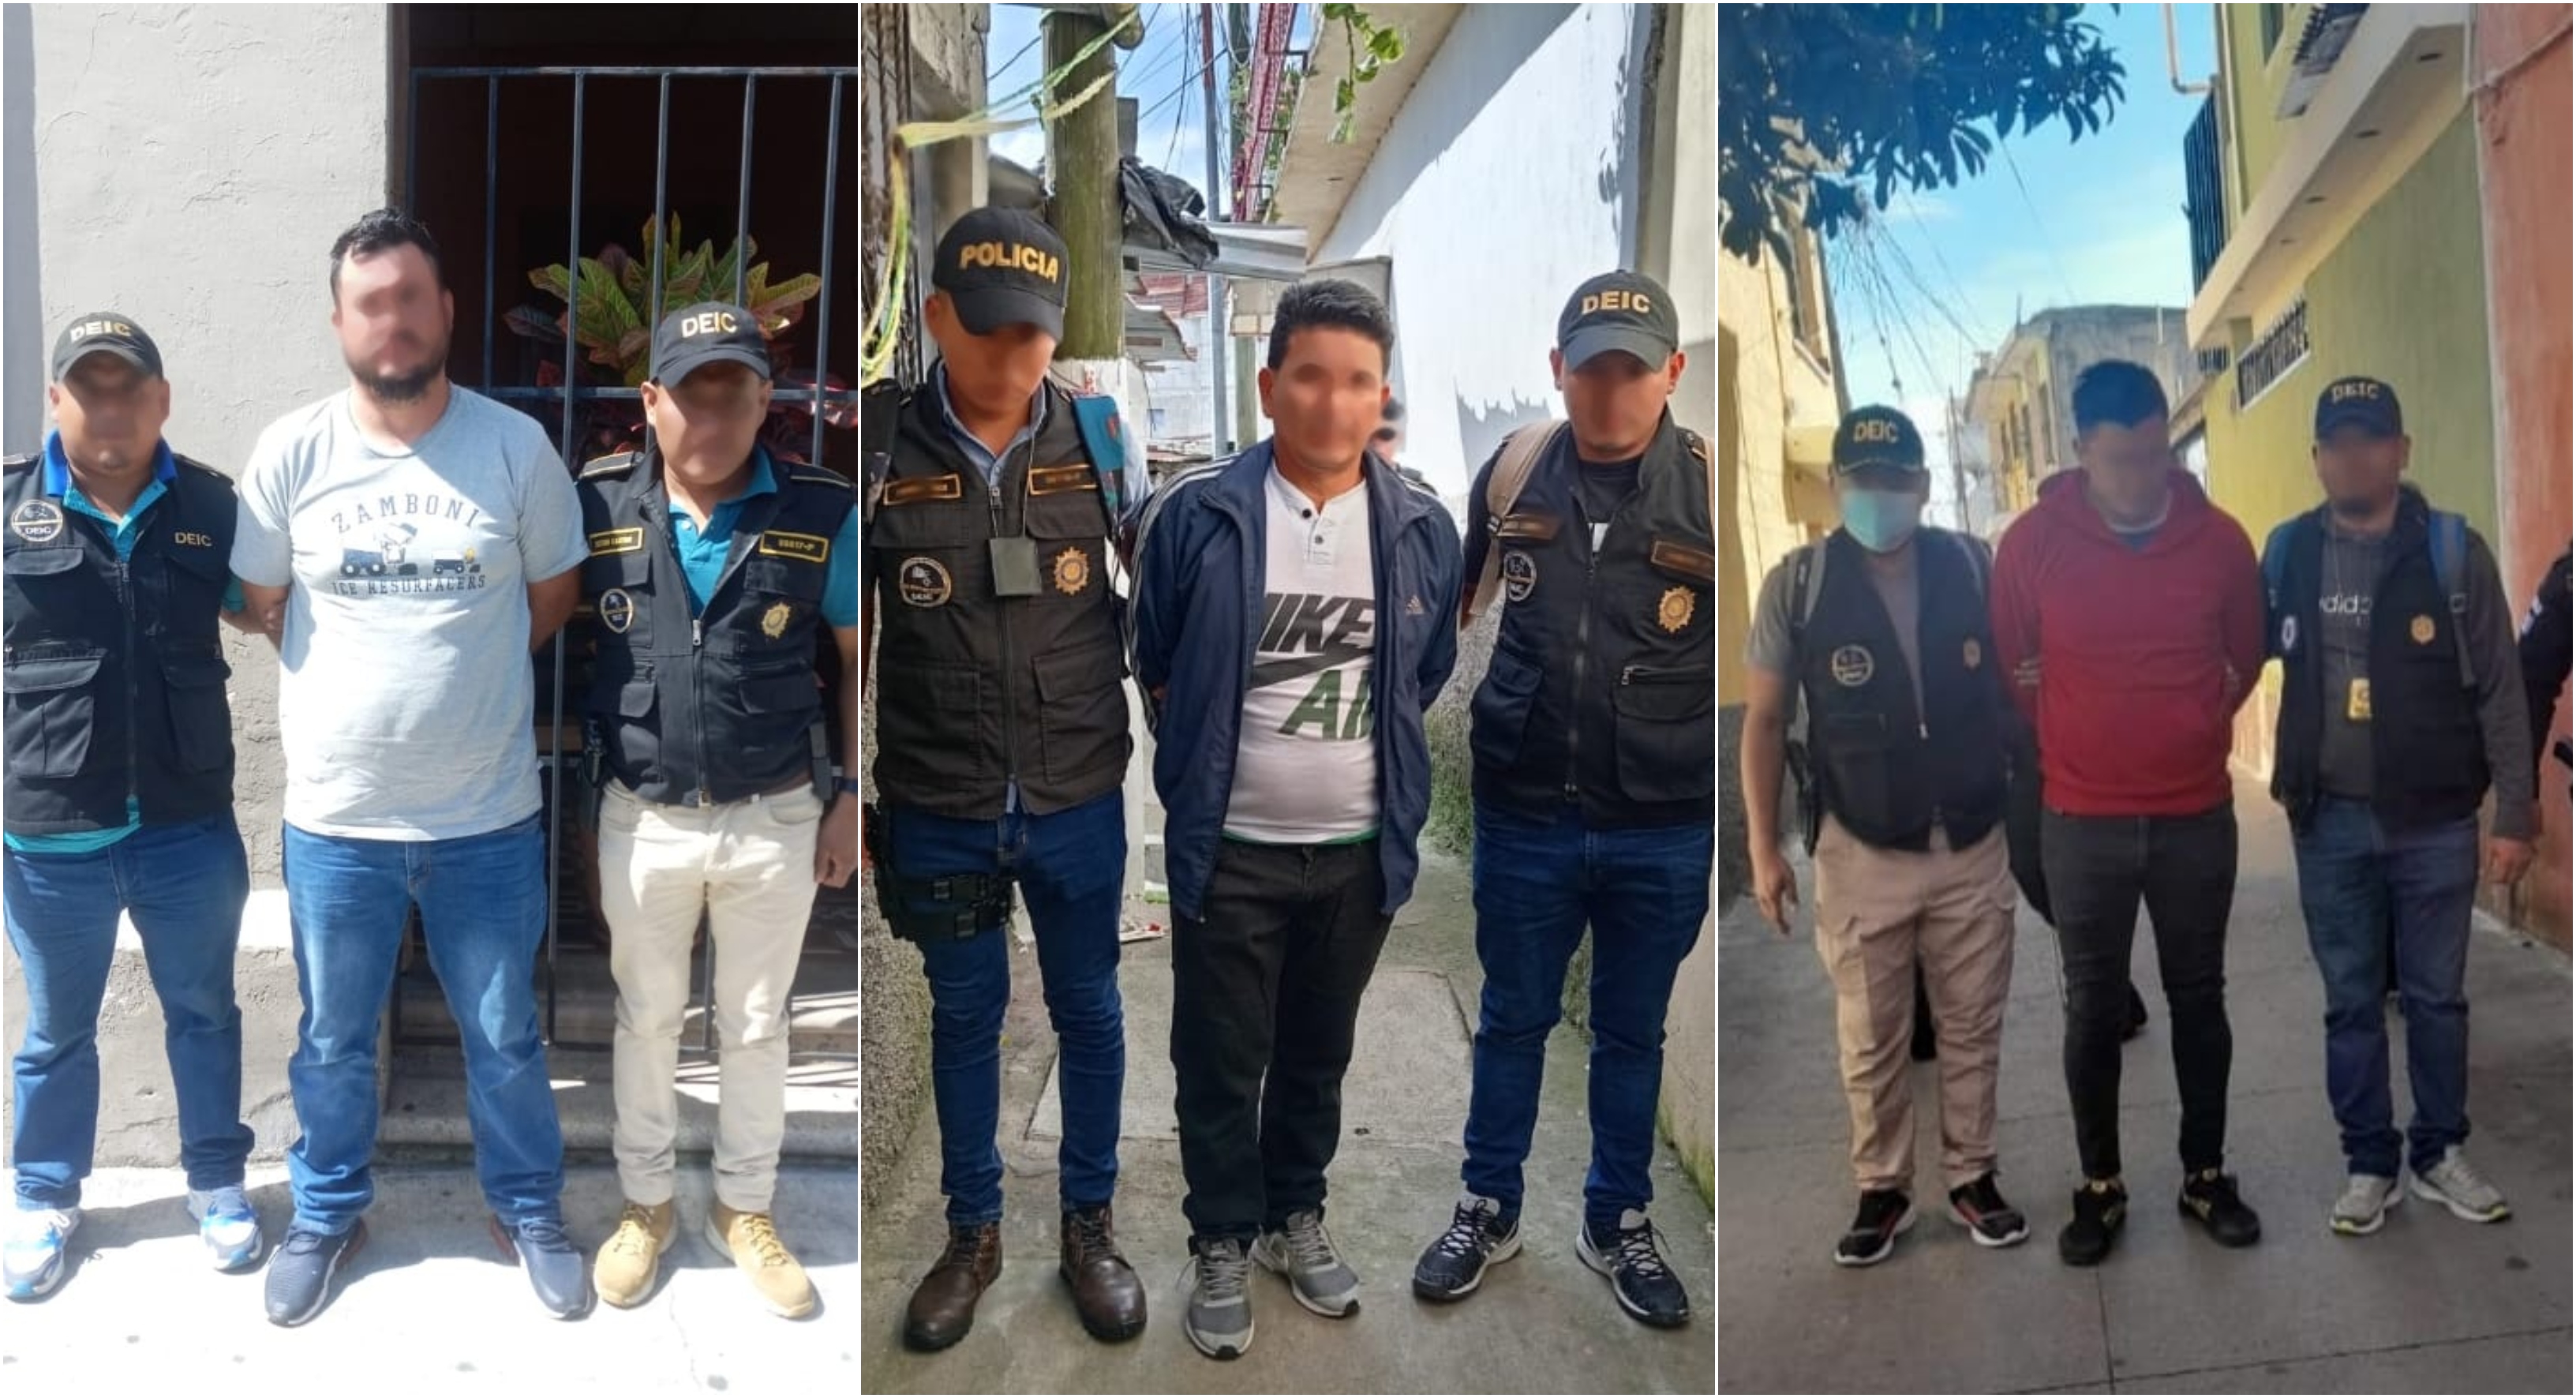 Tres de los siete apresados por las autoridades forman parte de la banda Los del Pacífico, que presuntamente robaba productos varios de camiones en rutas del País. (Foto Prensa Libre: Mingob).